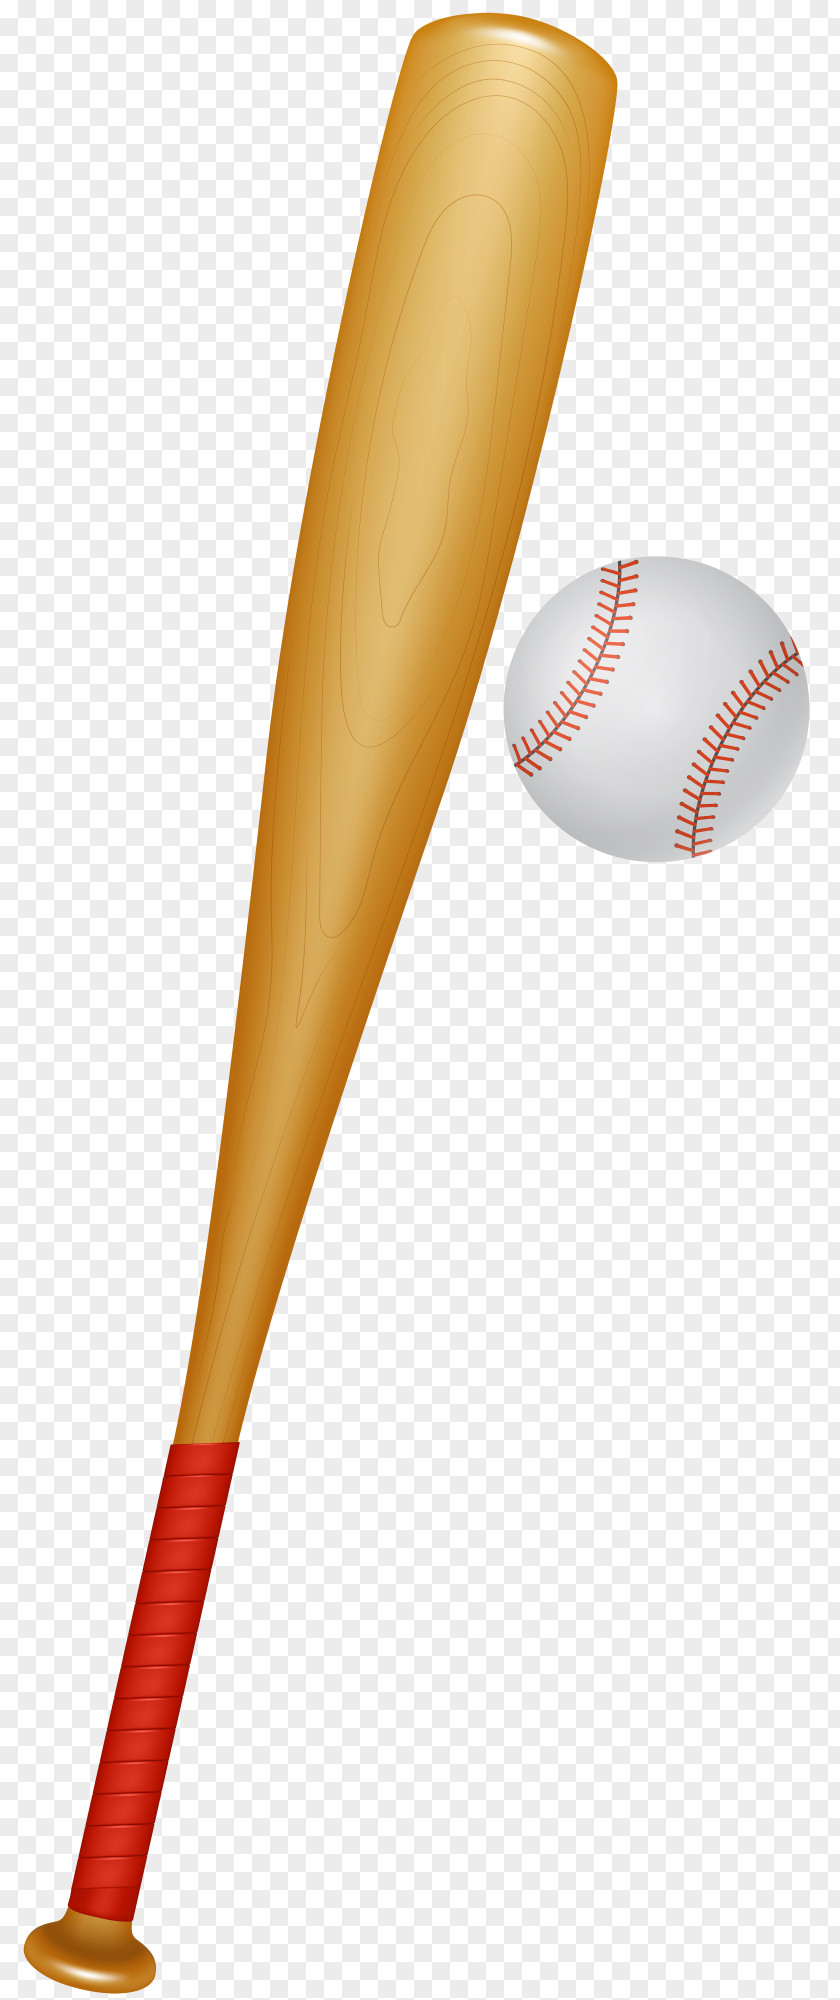 Baseball Bats Clip Art Ball Game PNG